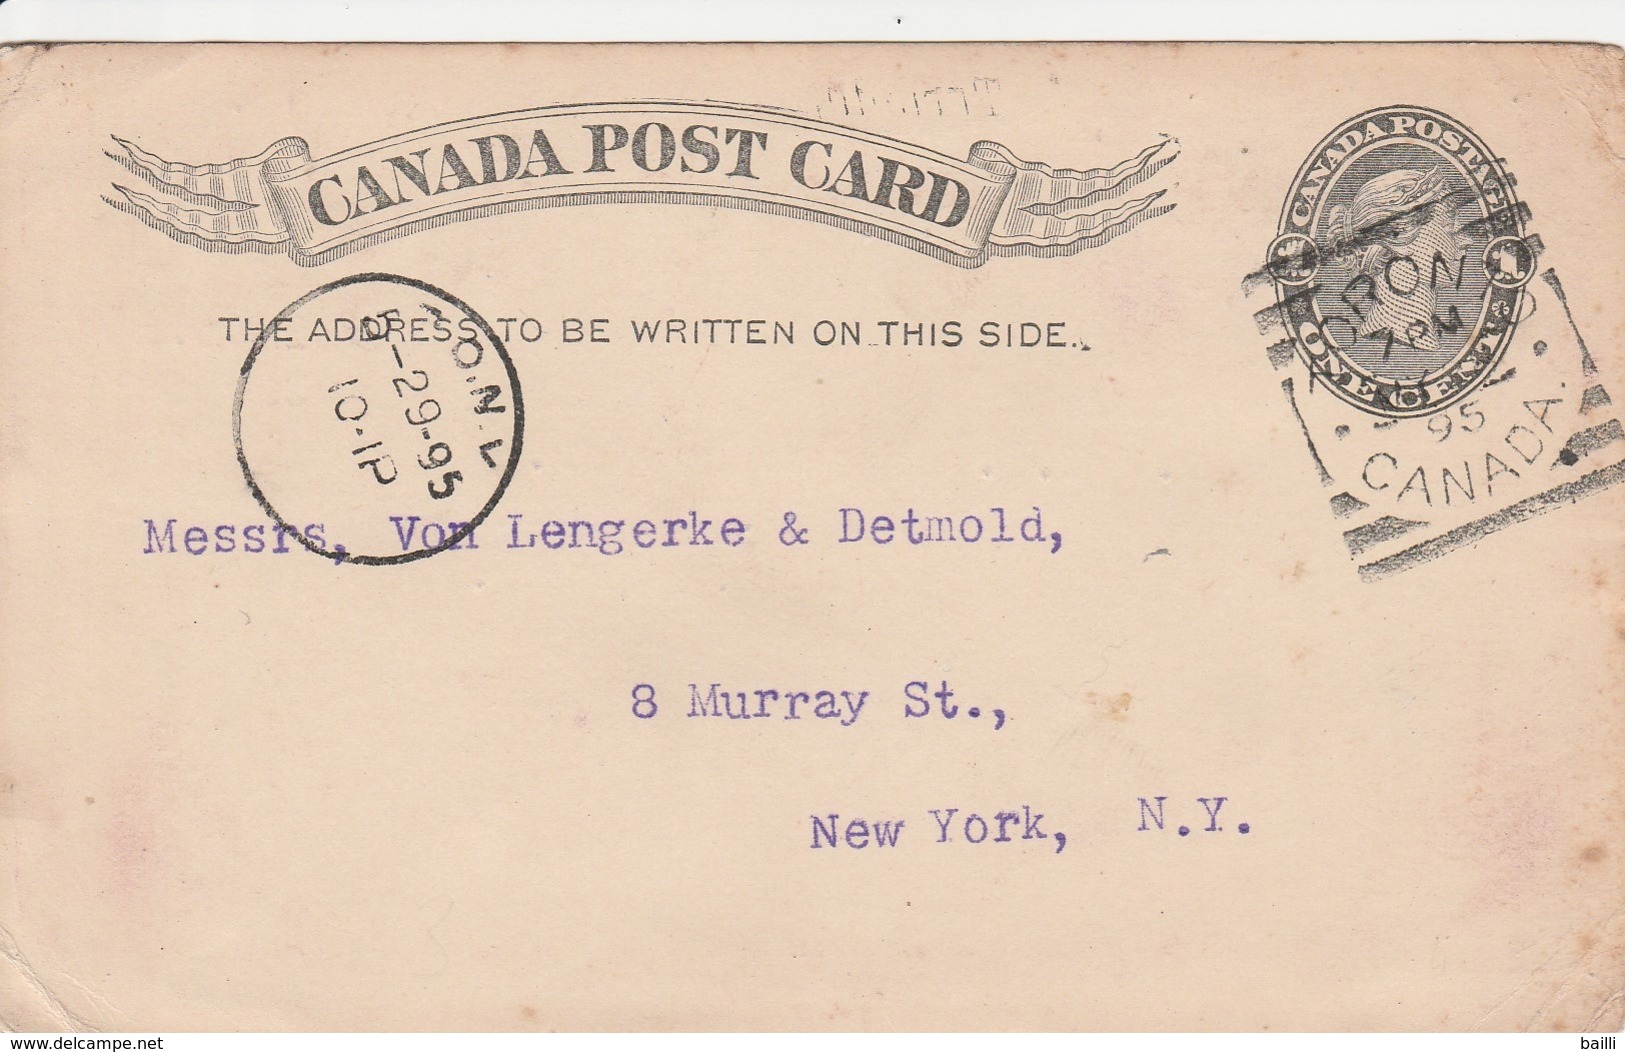 Canada Entier Postal Pour Les Etats Unis 1895 - 1860-1899 Regering Van Victoria